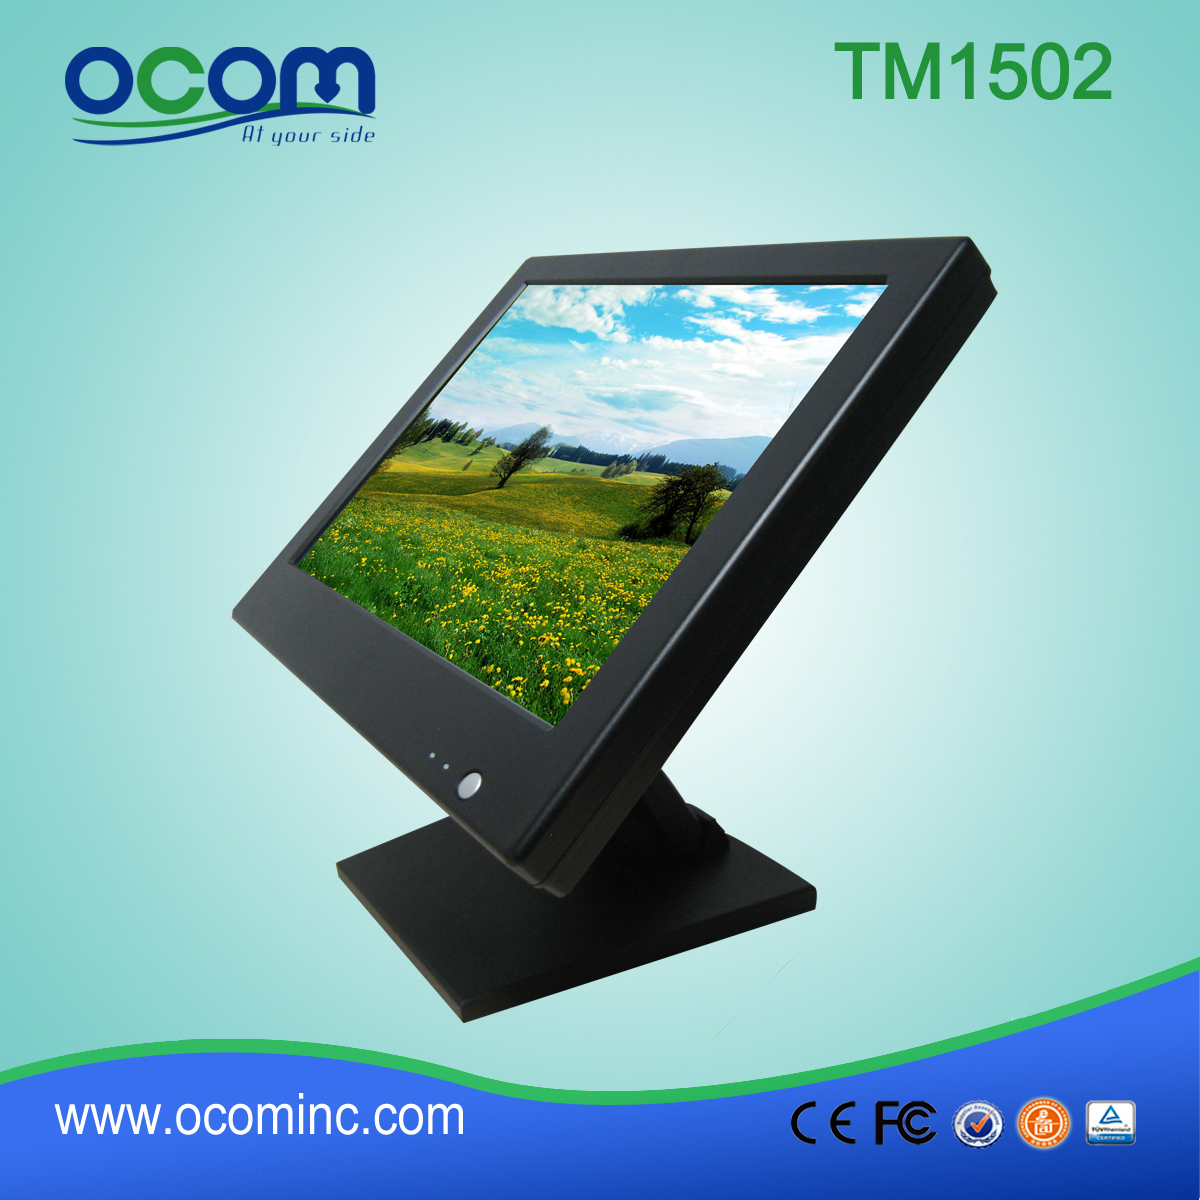 TM1502 最受欢迎的 15 英寸廉价触摸屏显示器